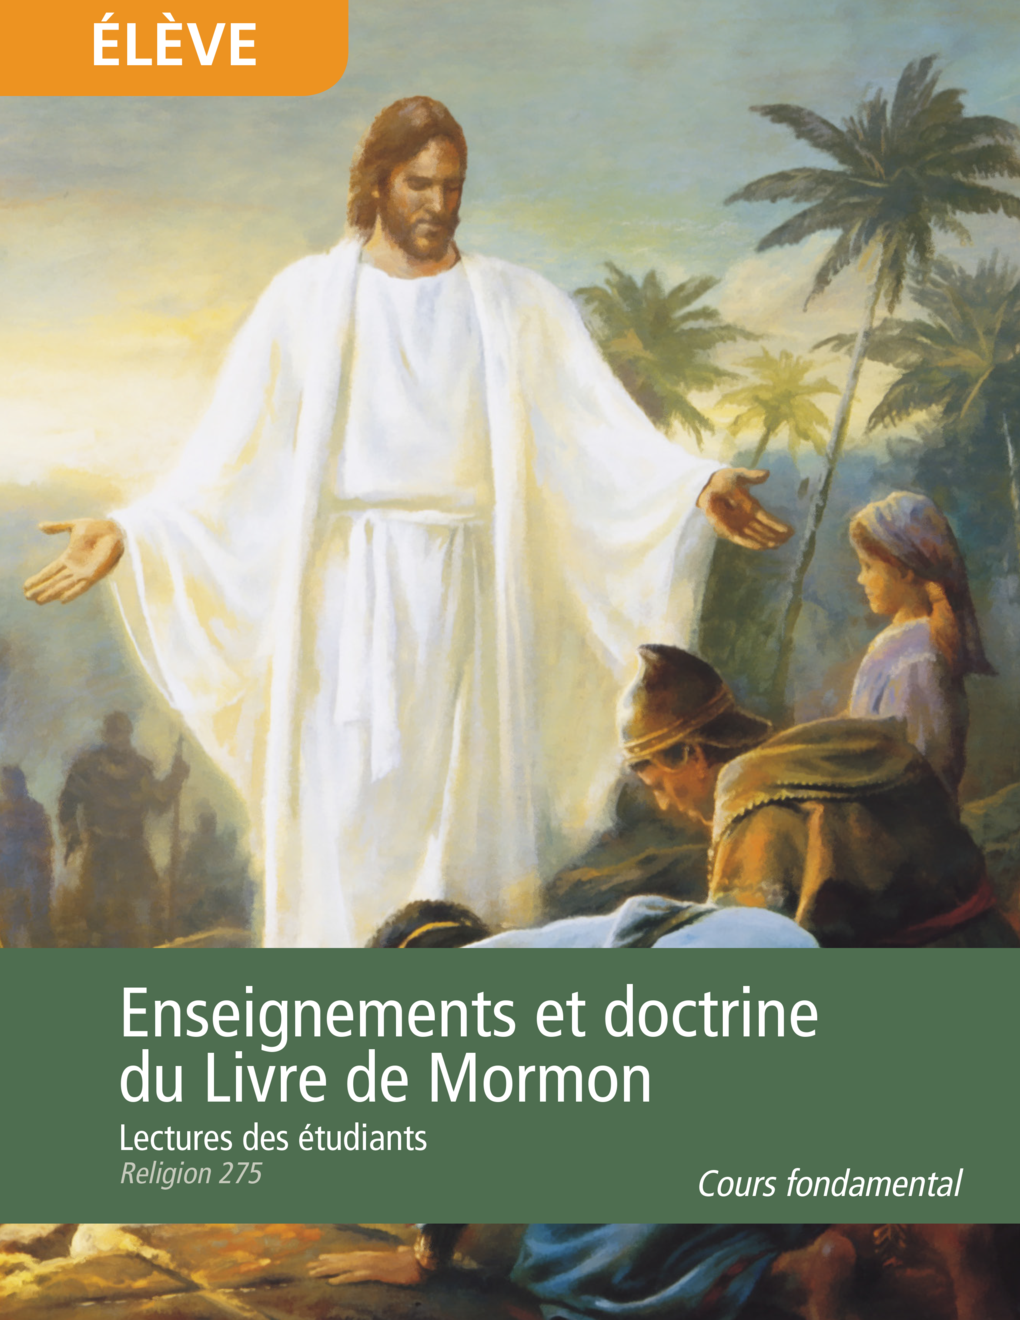 Enseignements et doctrine du Livre de Mormon, lectures des étudiants (Religion 275)